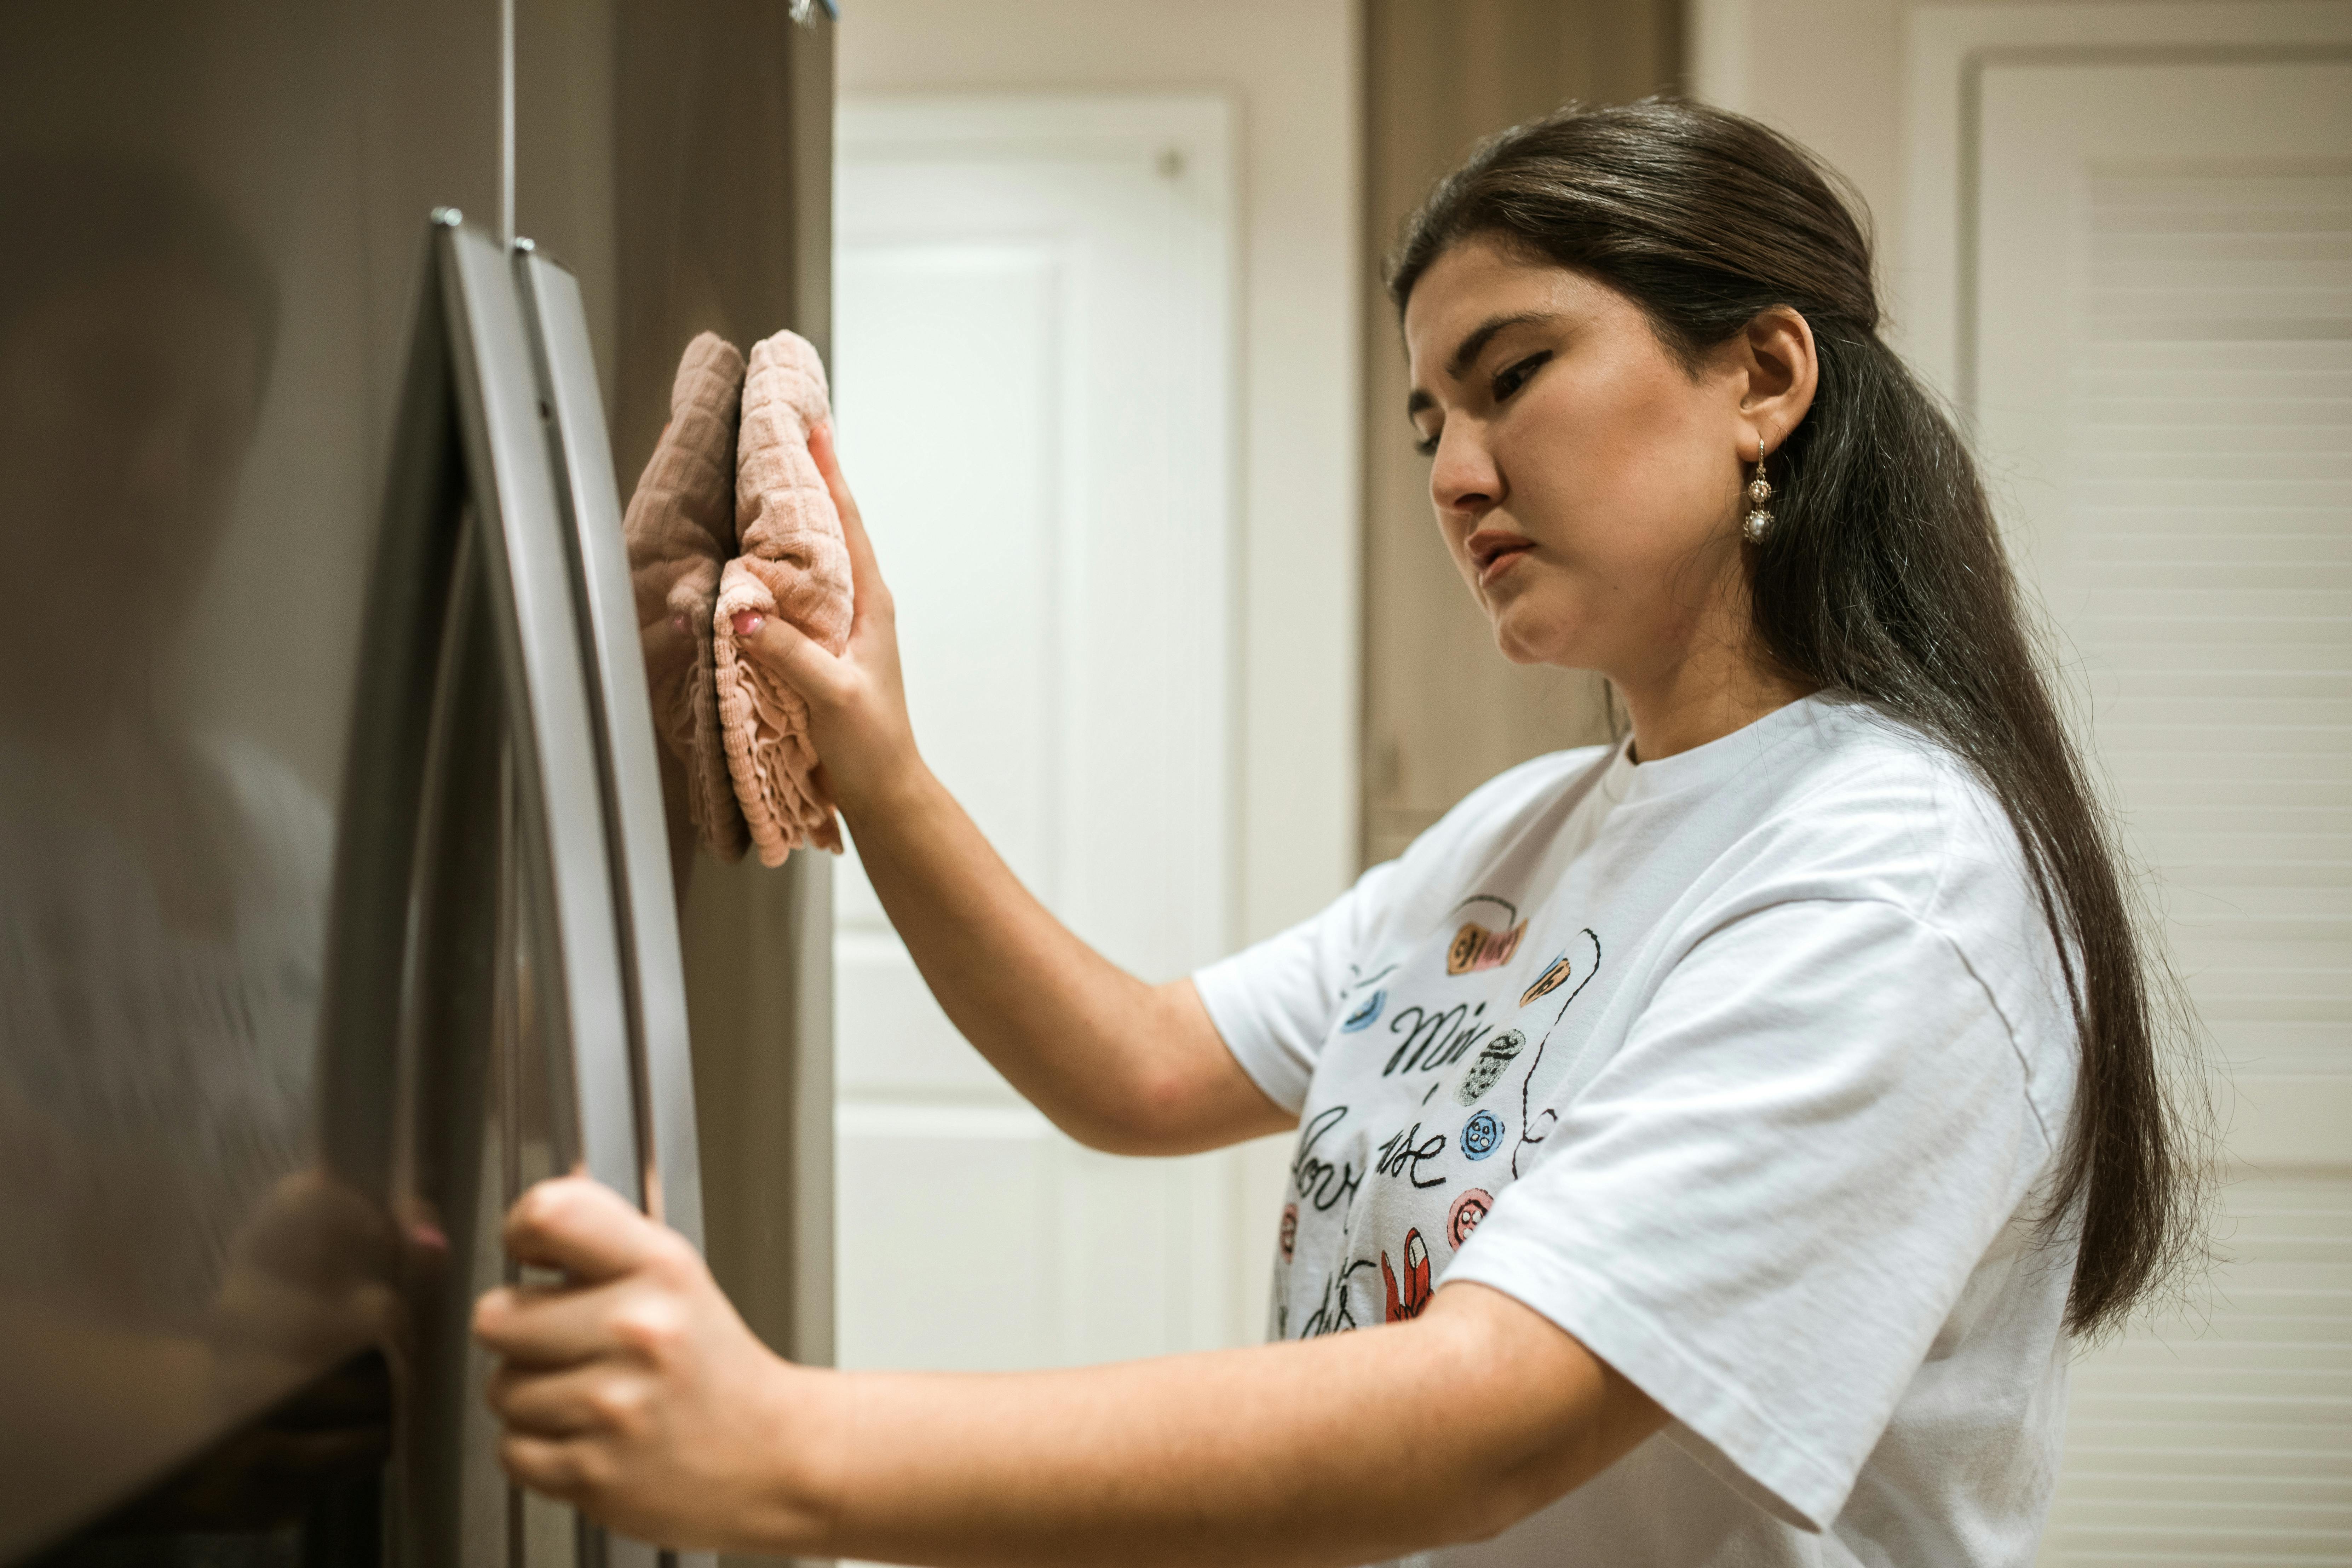 Una mujer limpiando un frigorífico. | Fuente: Pexels